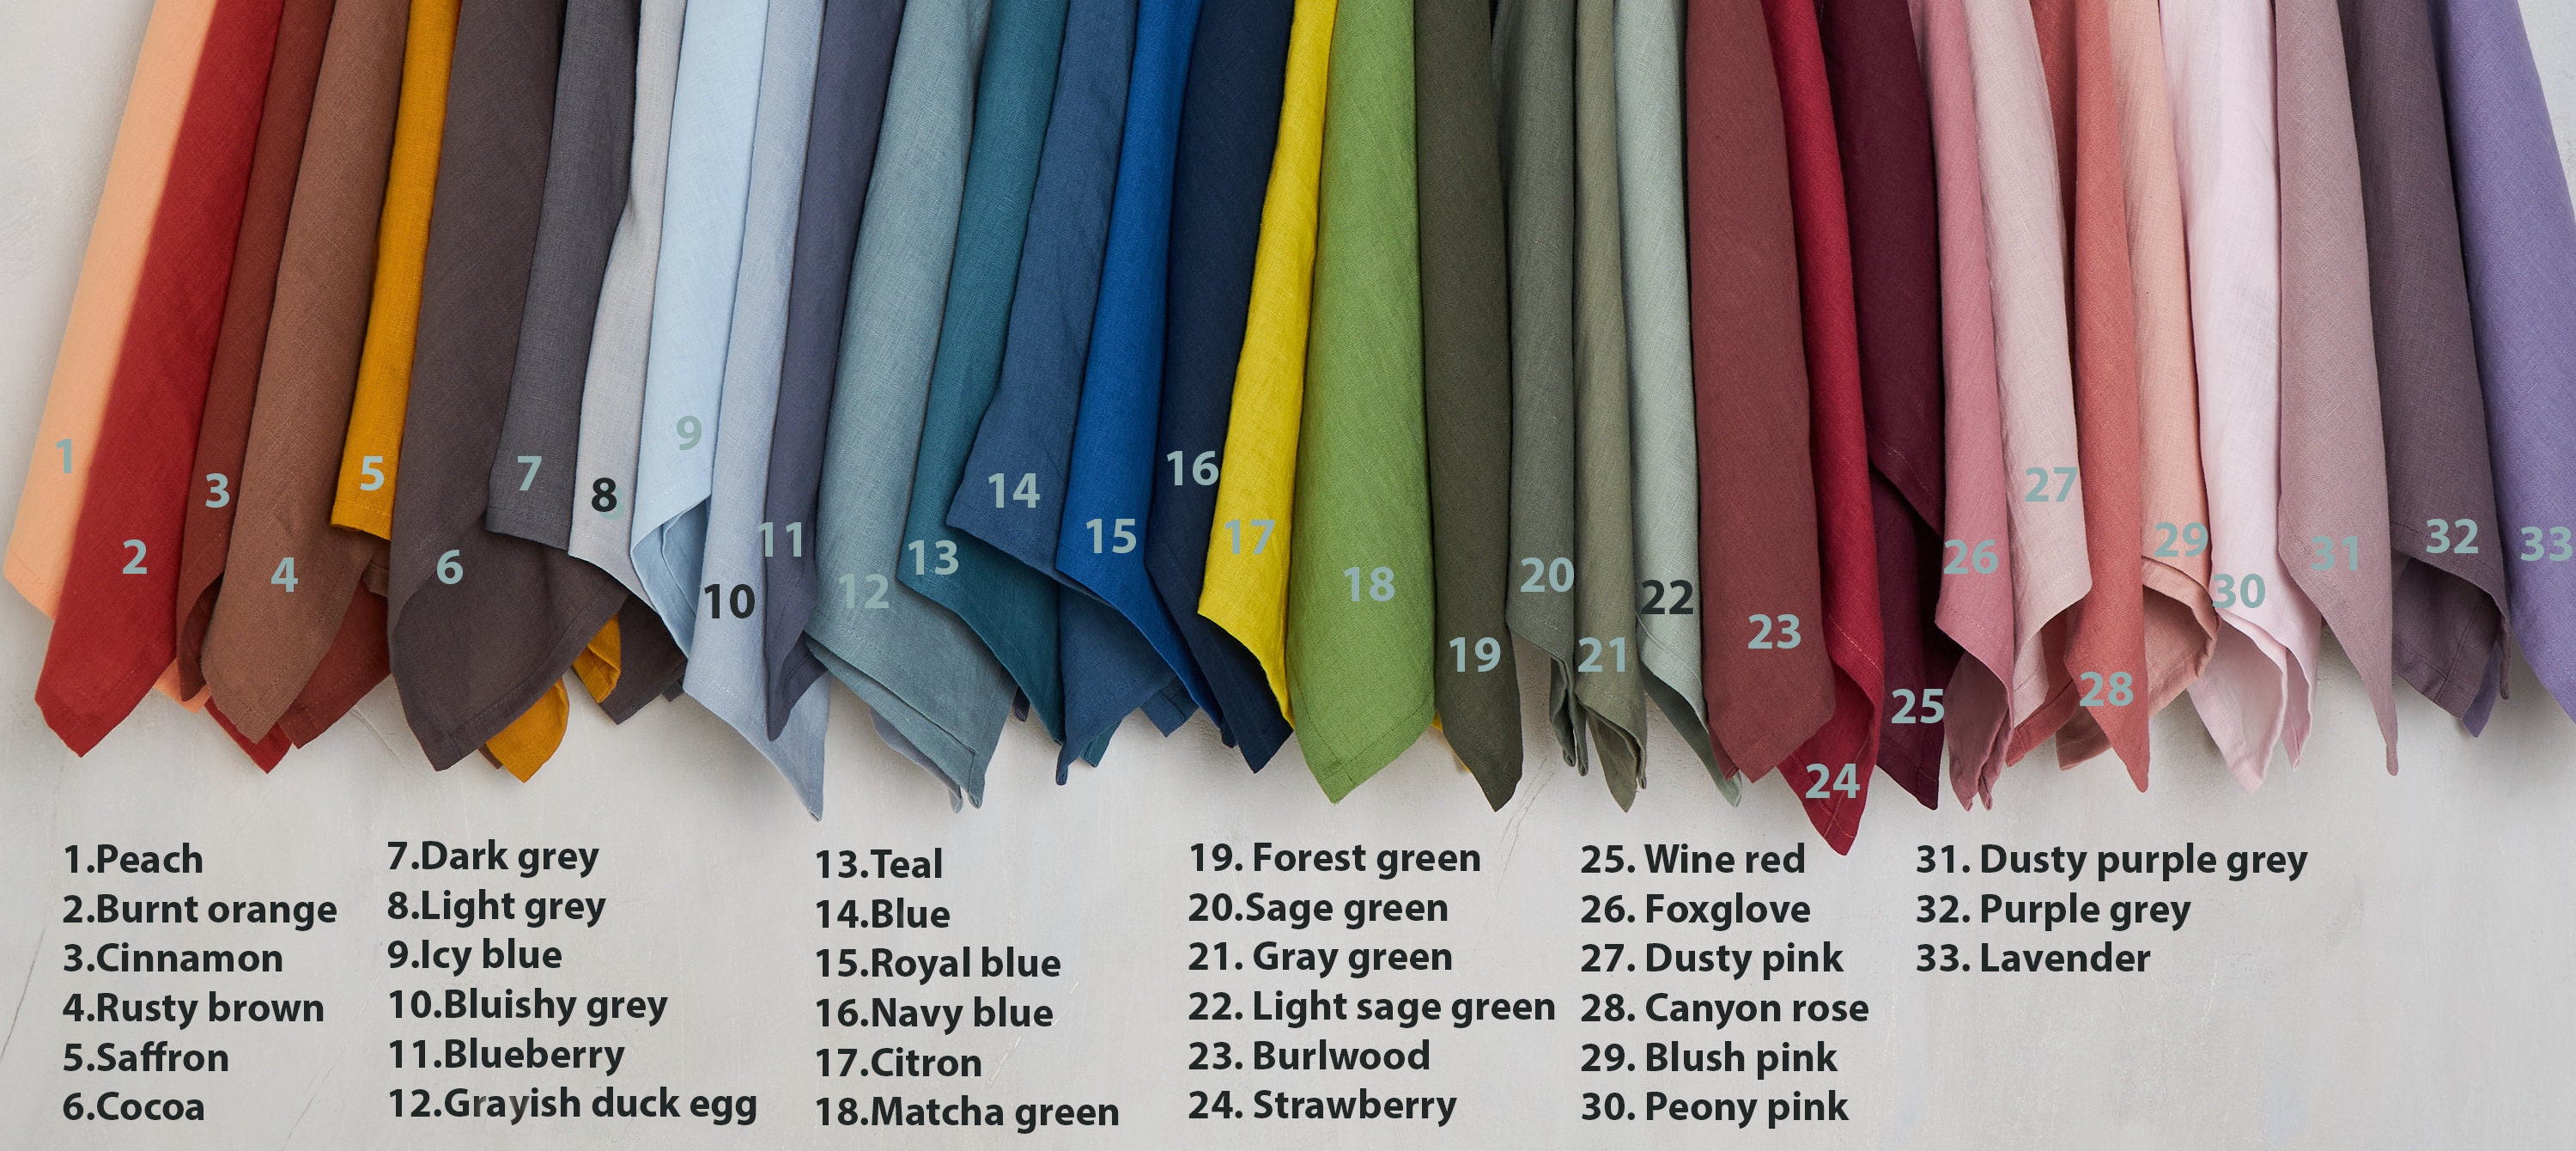 Washed Linen Napkins-Set of 4-6-8 Washed Linen napkins in blush pink  -dining napkins 16.5''x16.5''(42x42cm)Wedding linen napkins